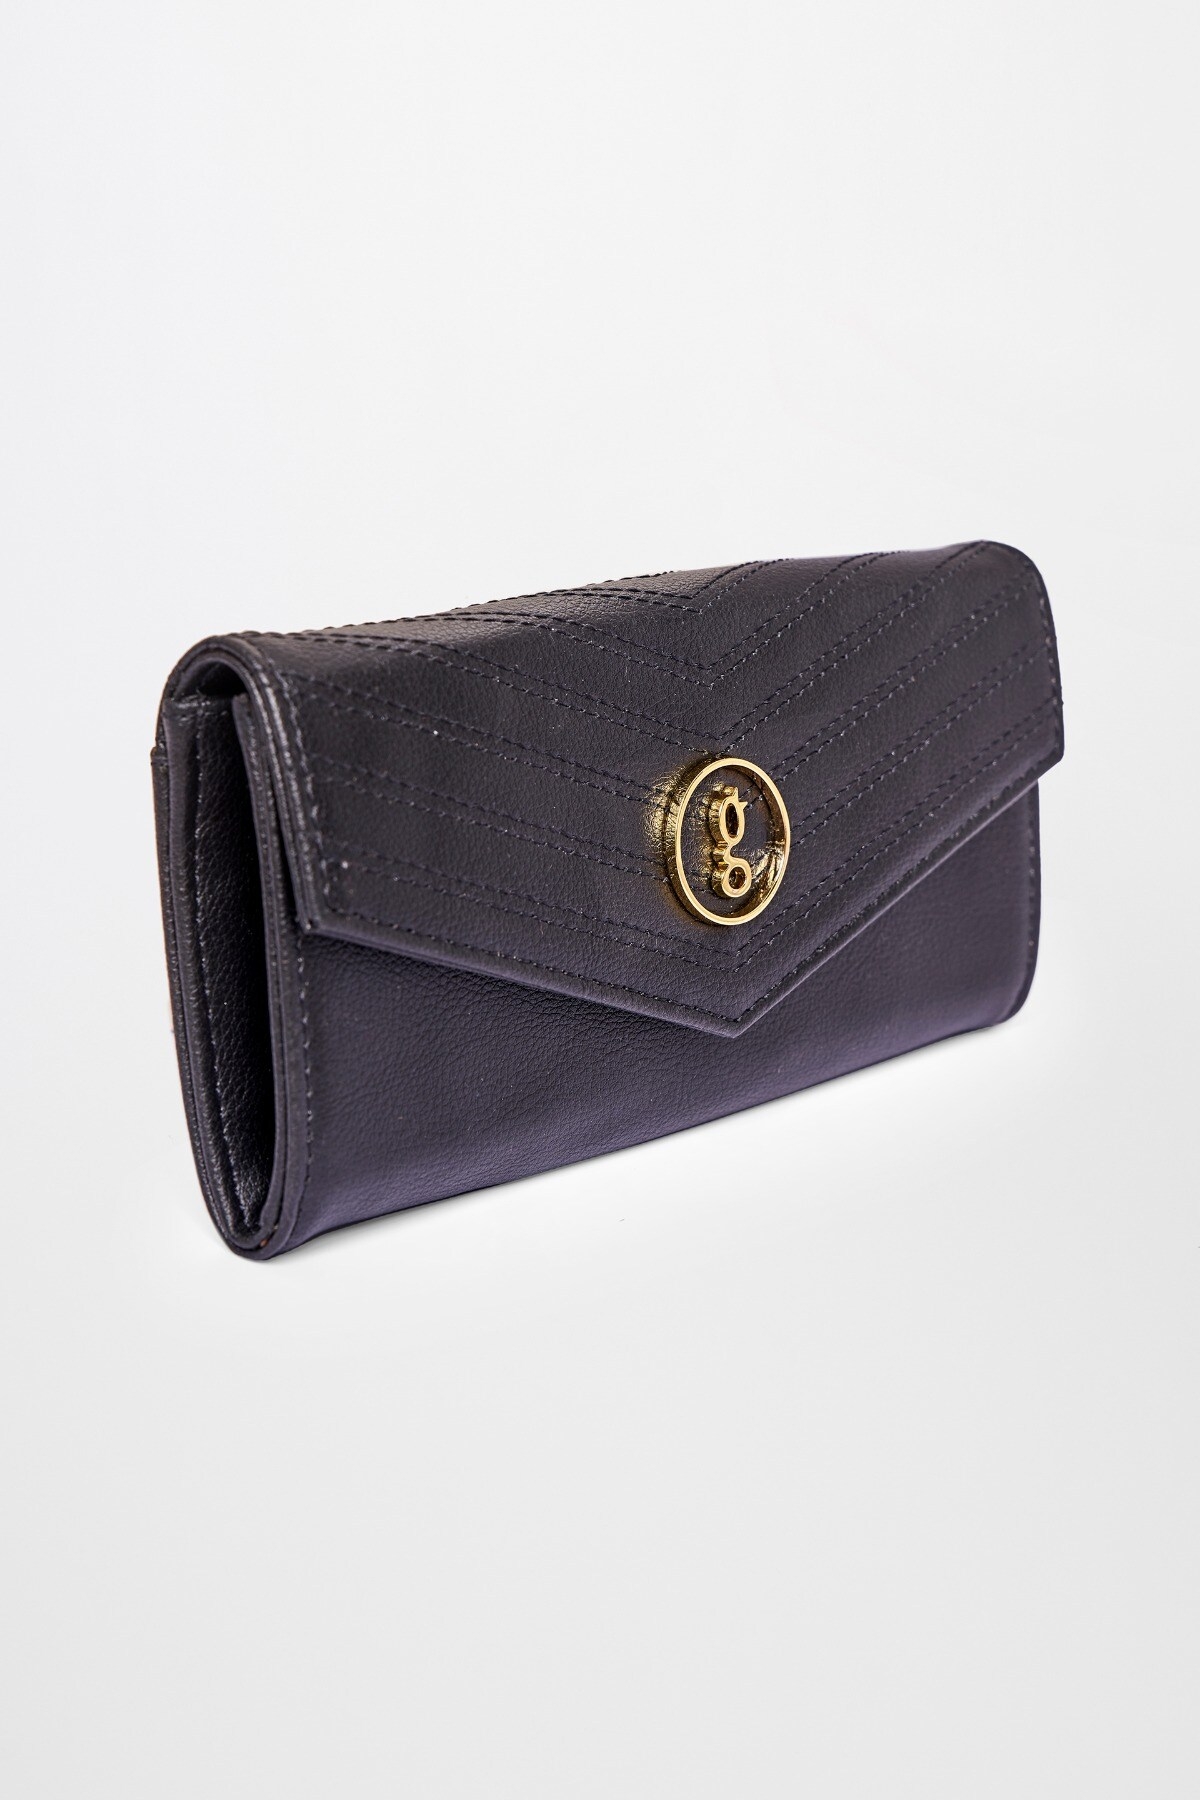 Global Desi | Black Wallet Hand Bag